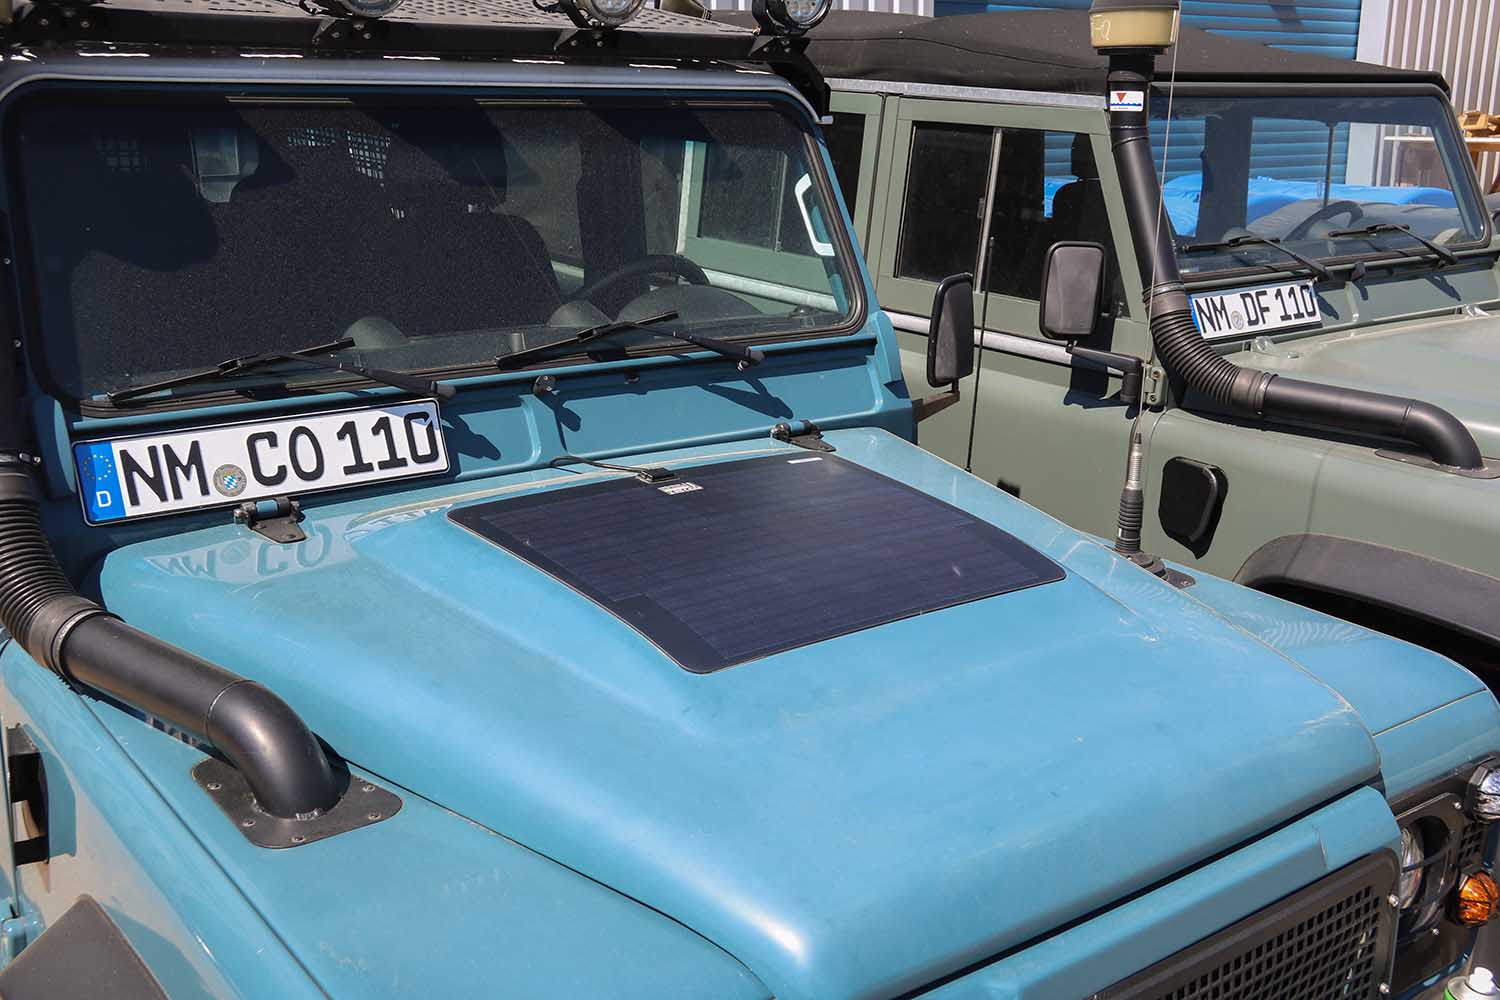 Solar panel for hood, 12V, for various vehicles